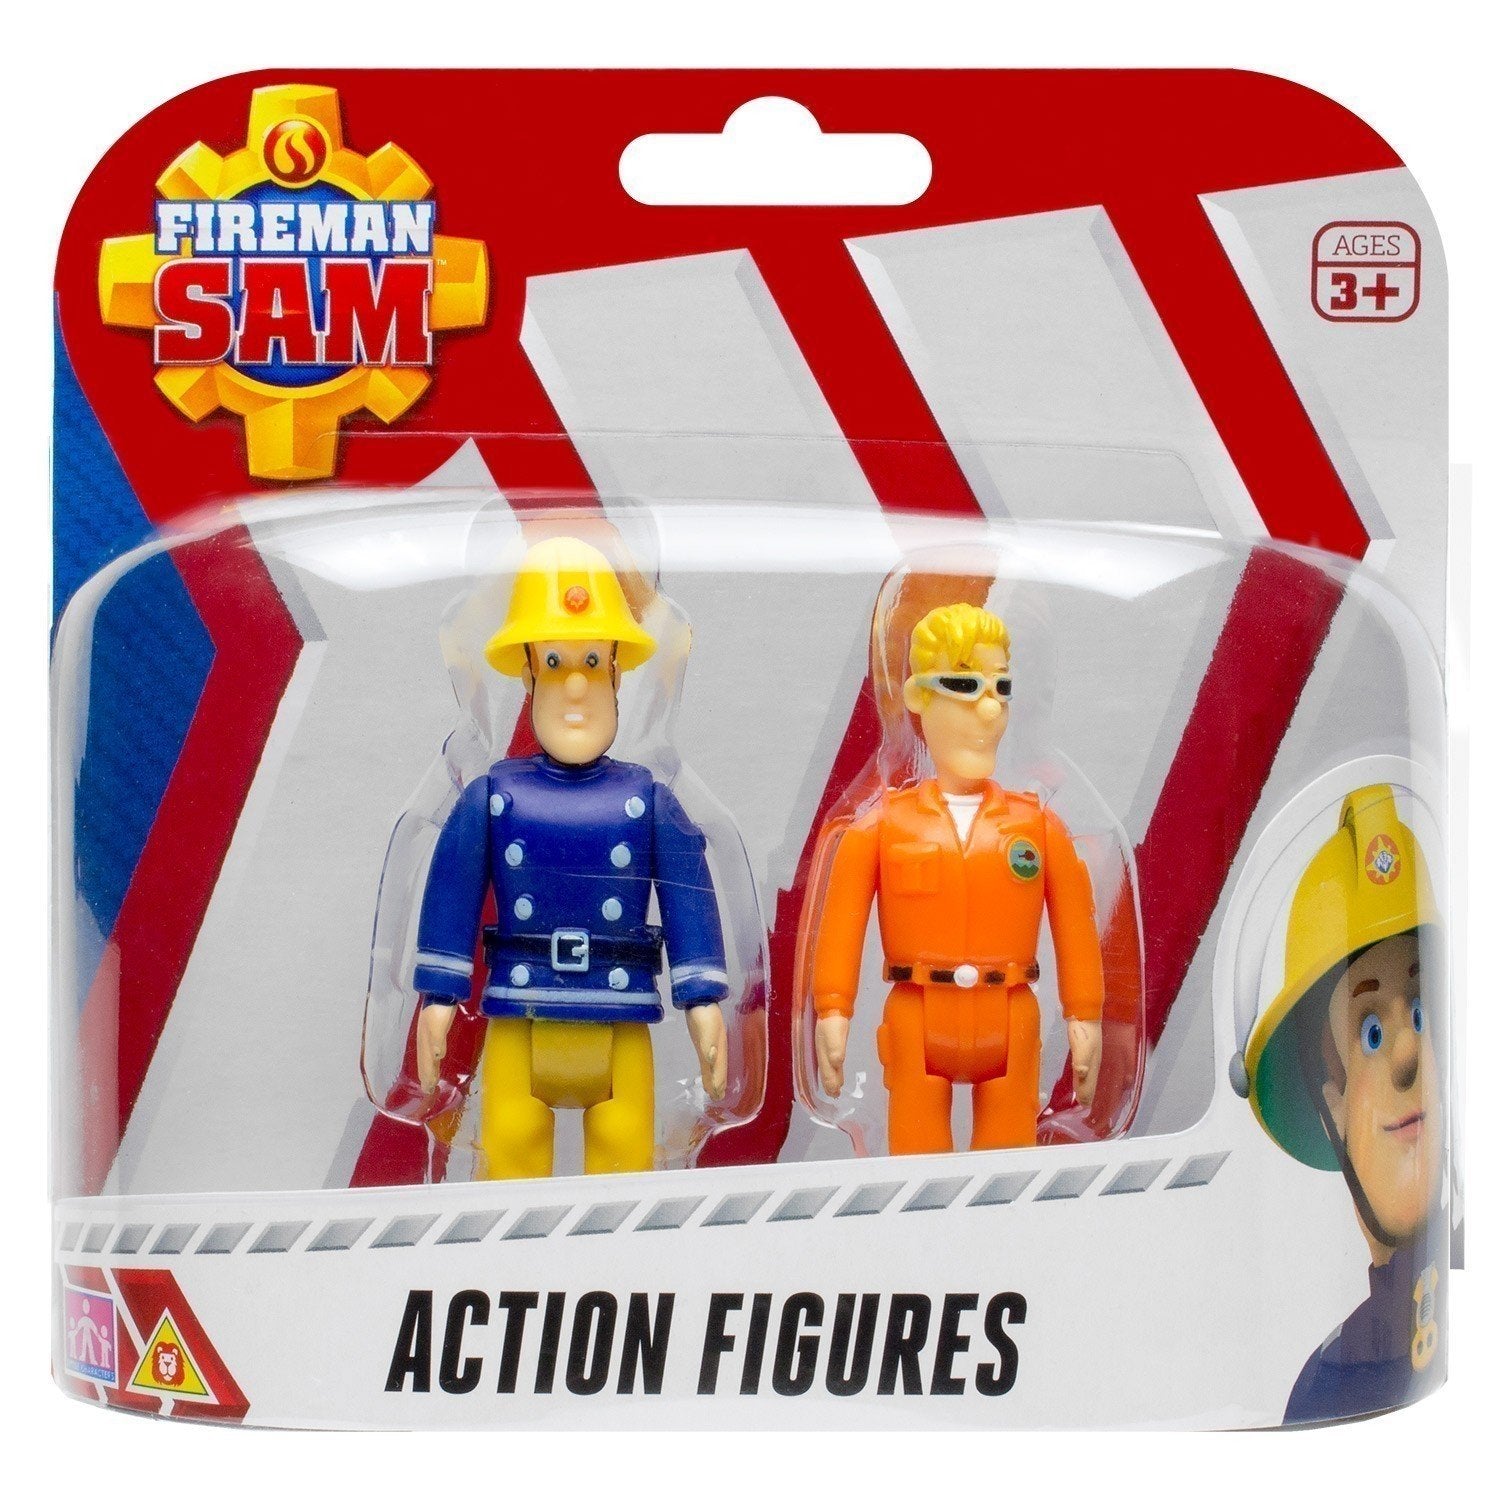 זוג דמויות סמי הכבאי סמי ותום - zrizi toys